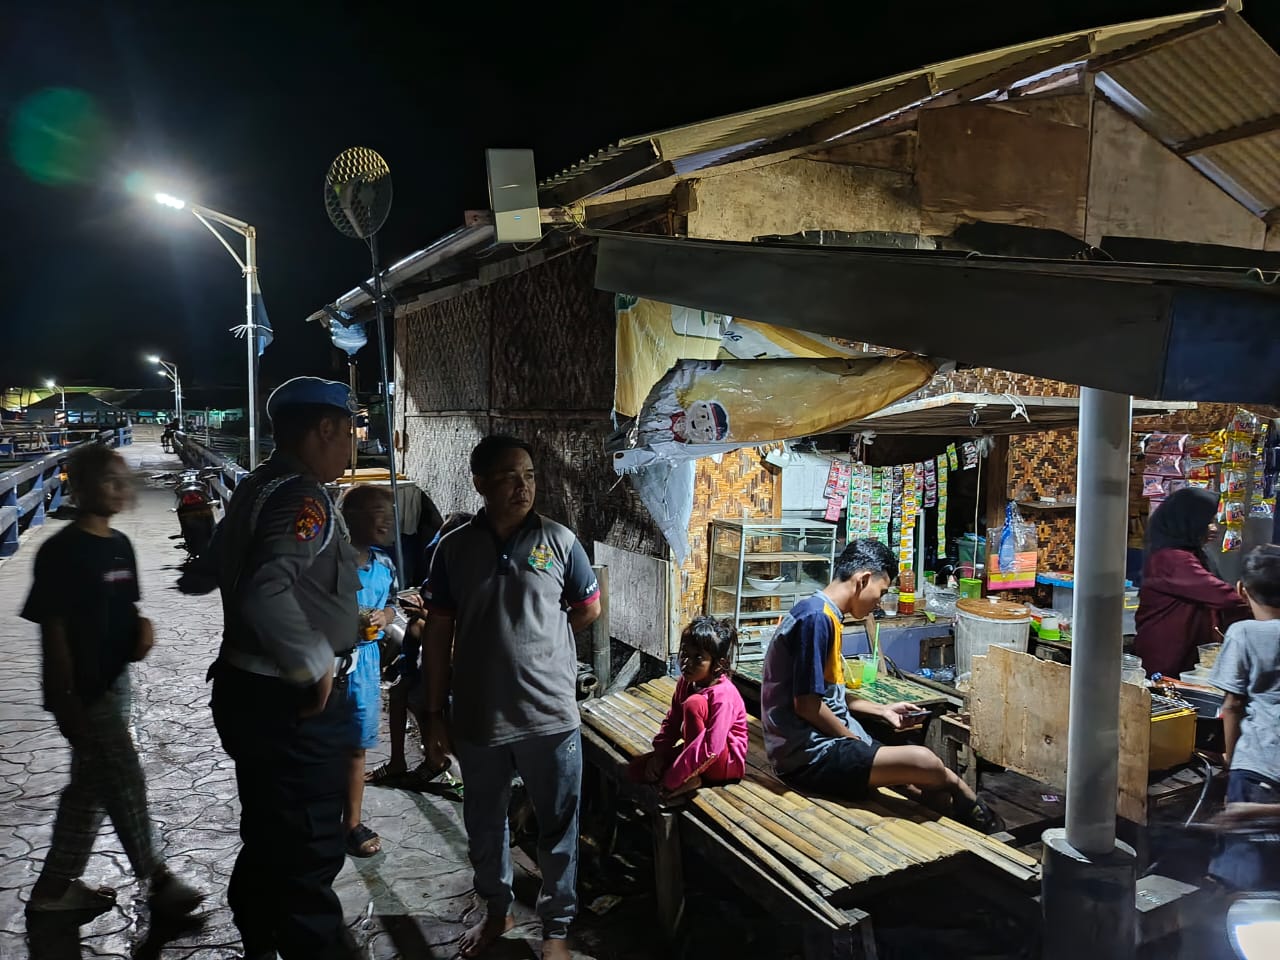 Polsek Kepulauan Seribu Utara Gelar Patroli Malam Antisipasi Gangguan Kamtibmas